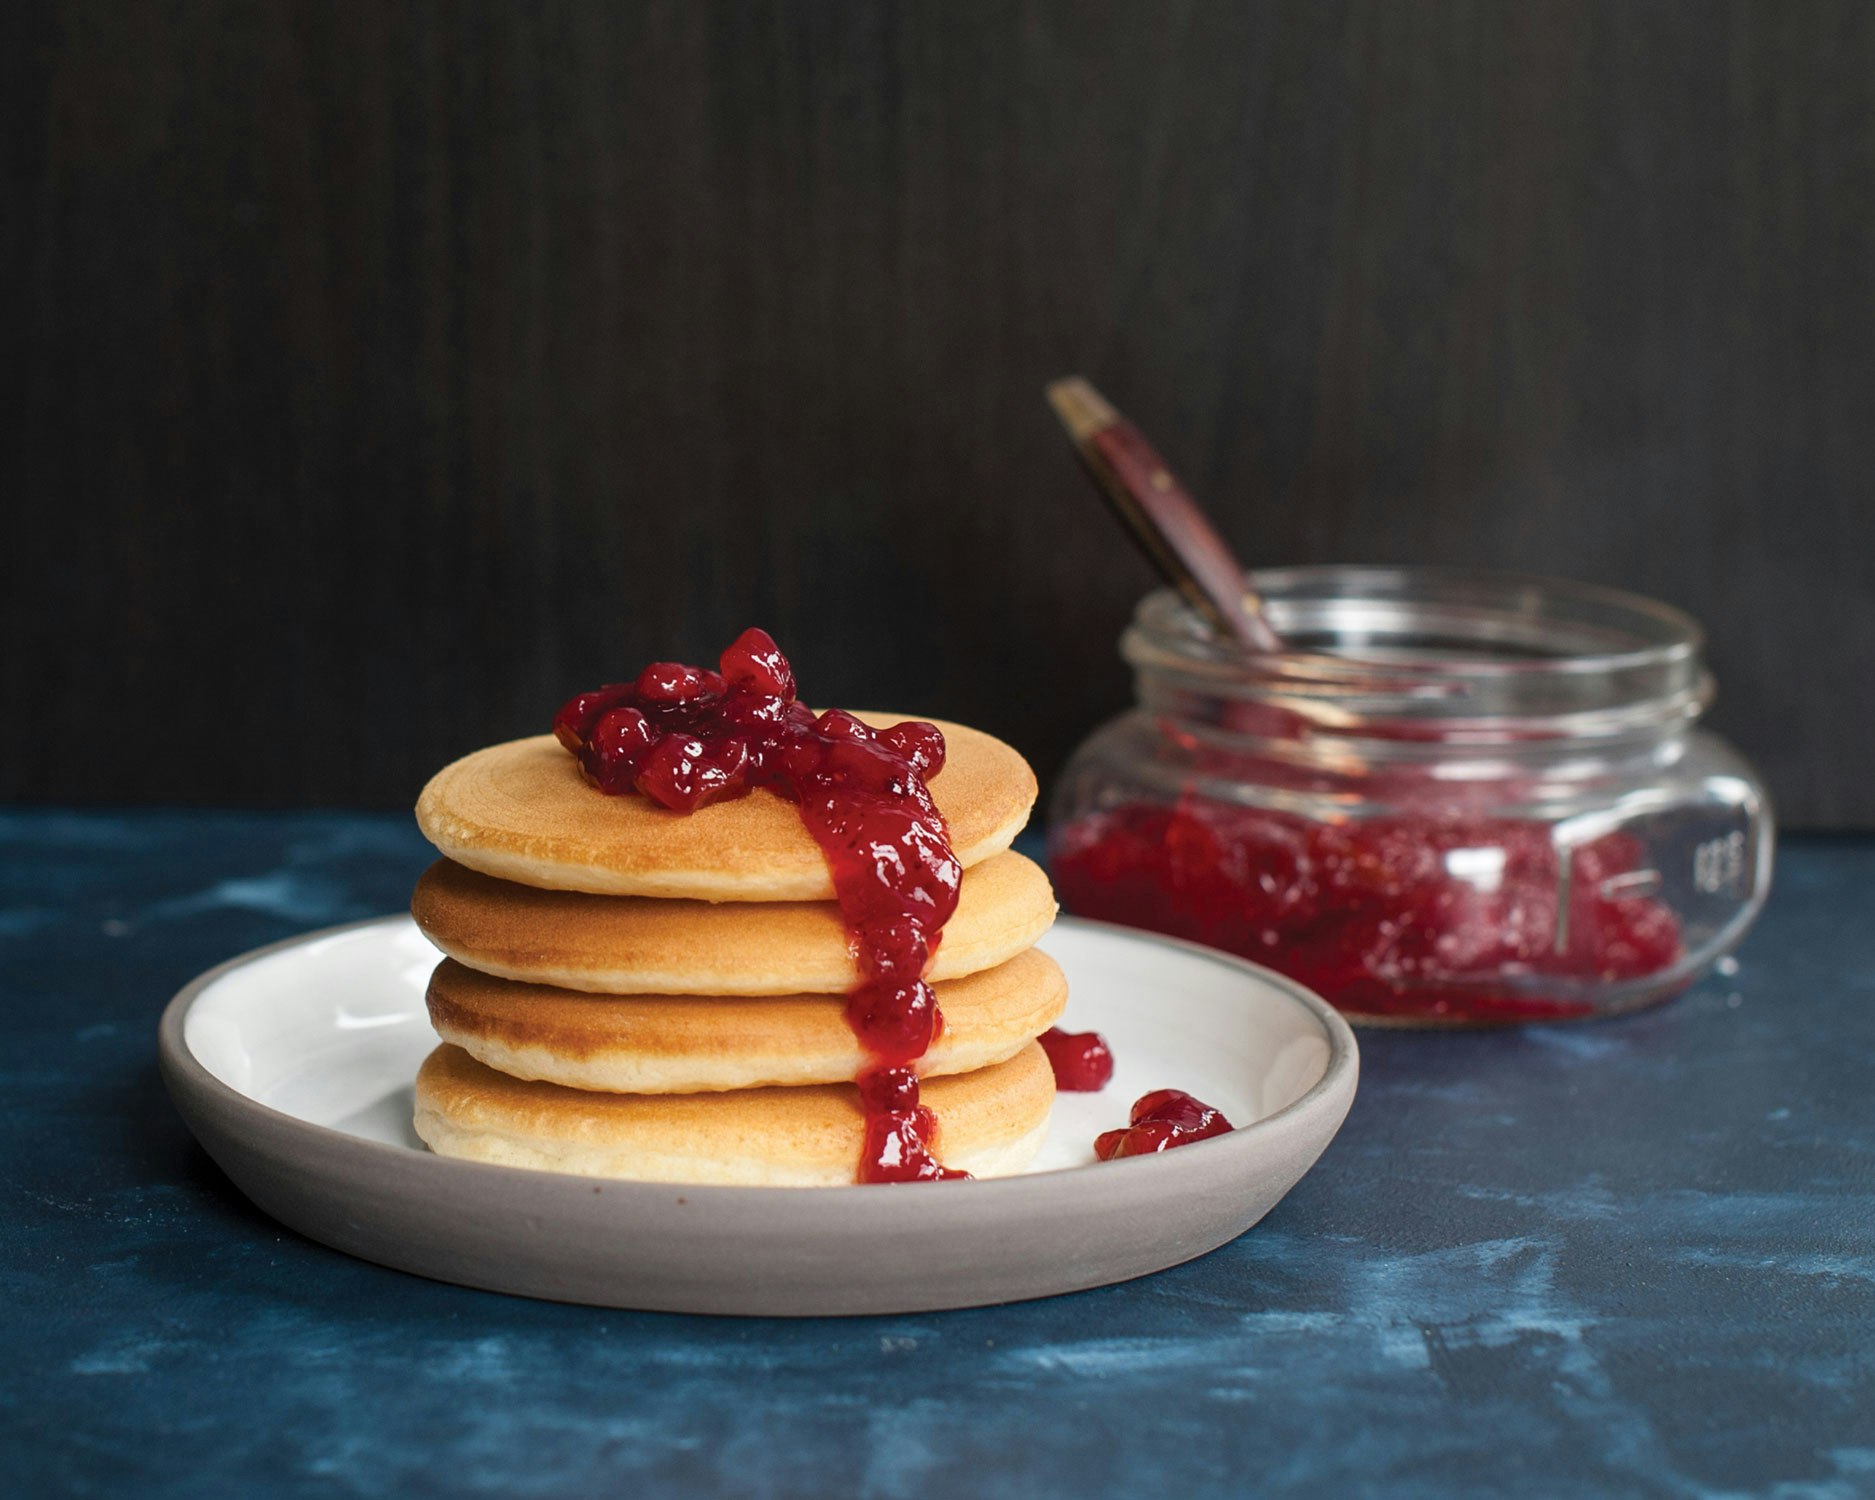 Silver Dollar Frying Pan For Pancakes - Nordic Ware @ RoyalDesign